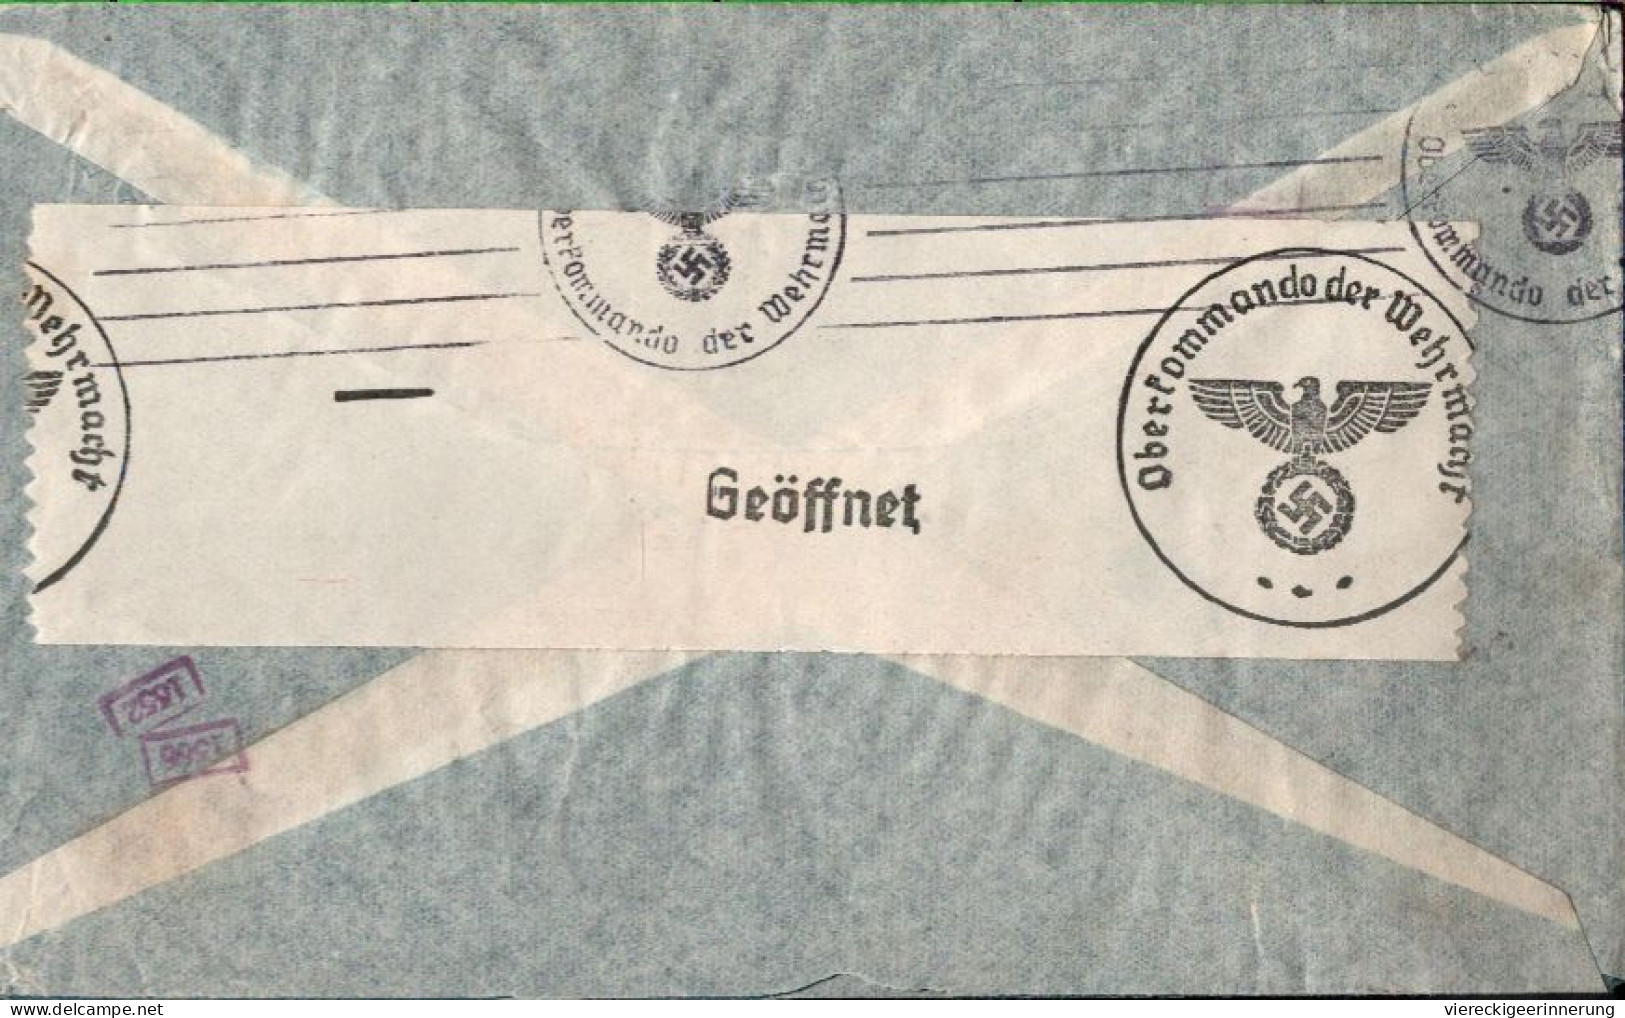 ! Argentinien 1940 Luftpost Brief Aus Buenos Aires Nach Berlin Mit OKW Zensur, Censor Mark, Airmail Via Condor - Lettres & Documents